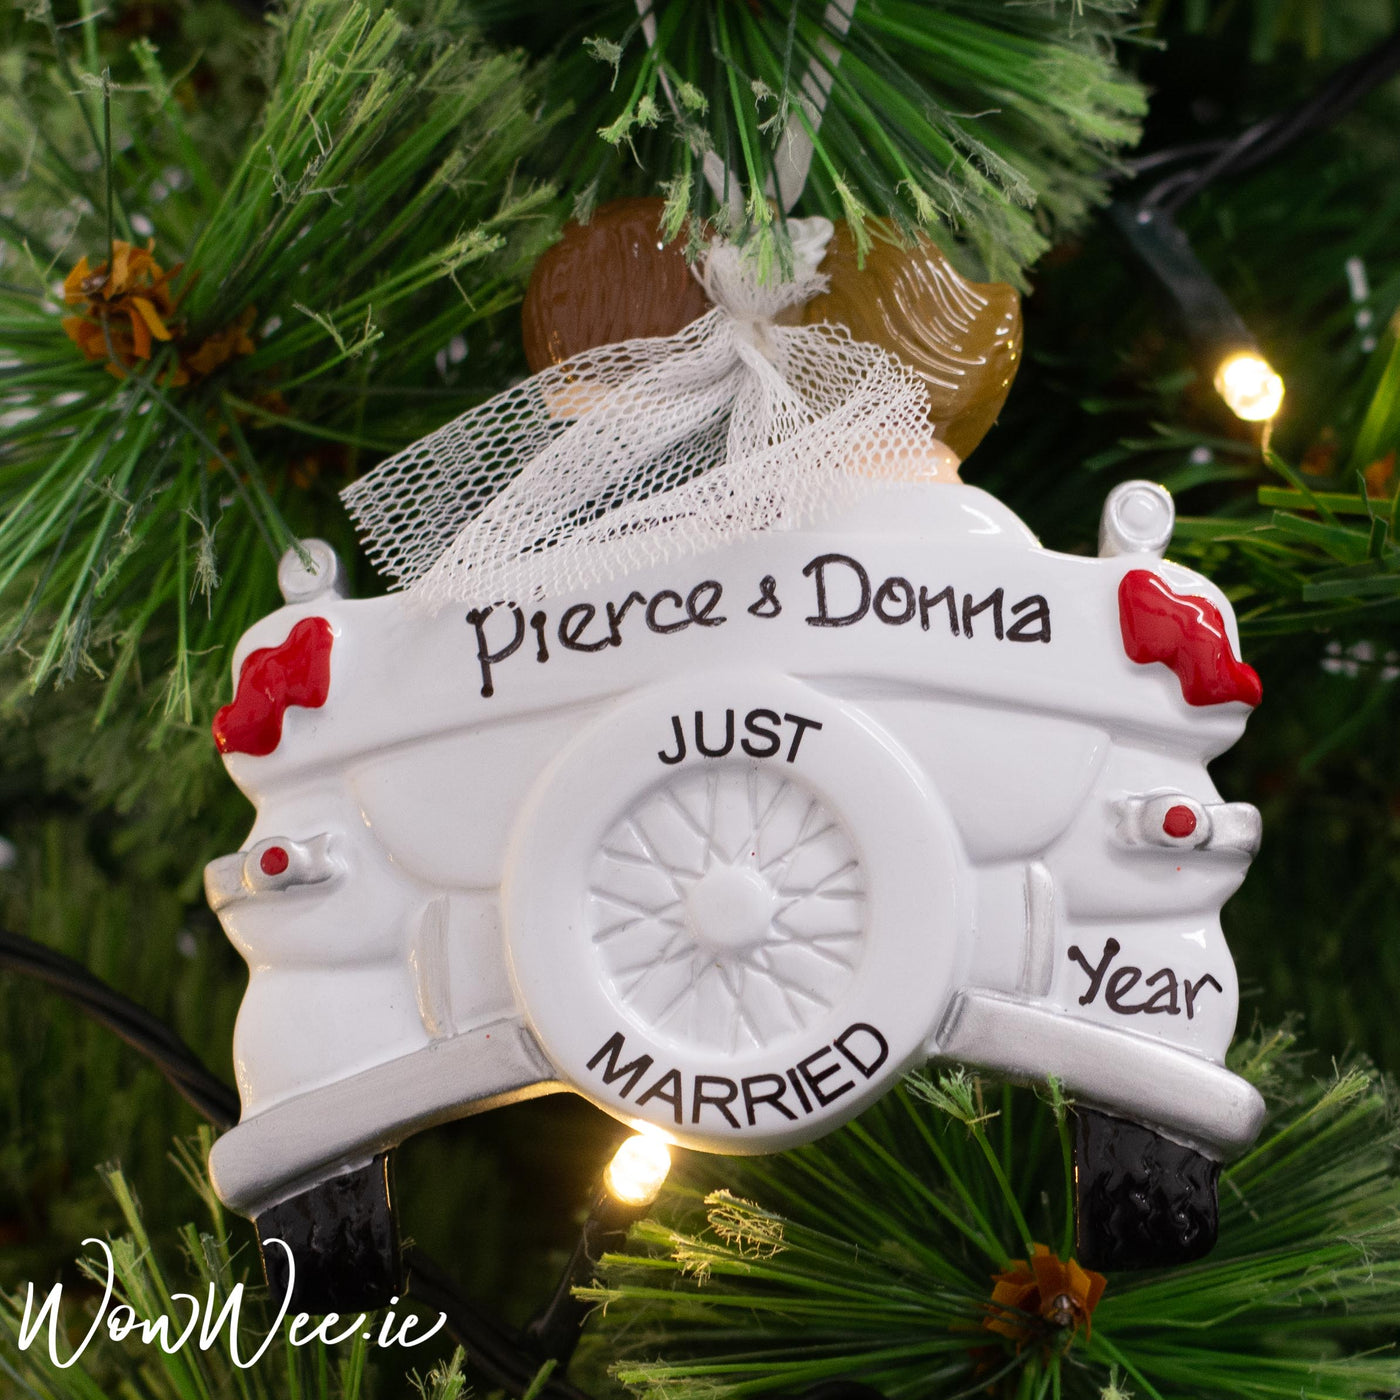 Personalised Christmas Ornaments | Personalised Wedding Ornaments | Personalised Ornaments for Couples | WowWee.ie